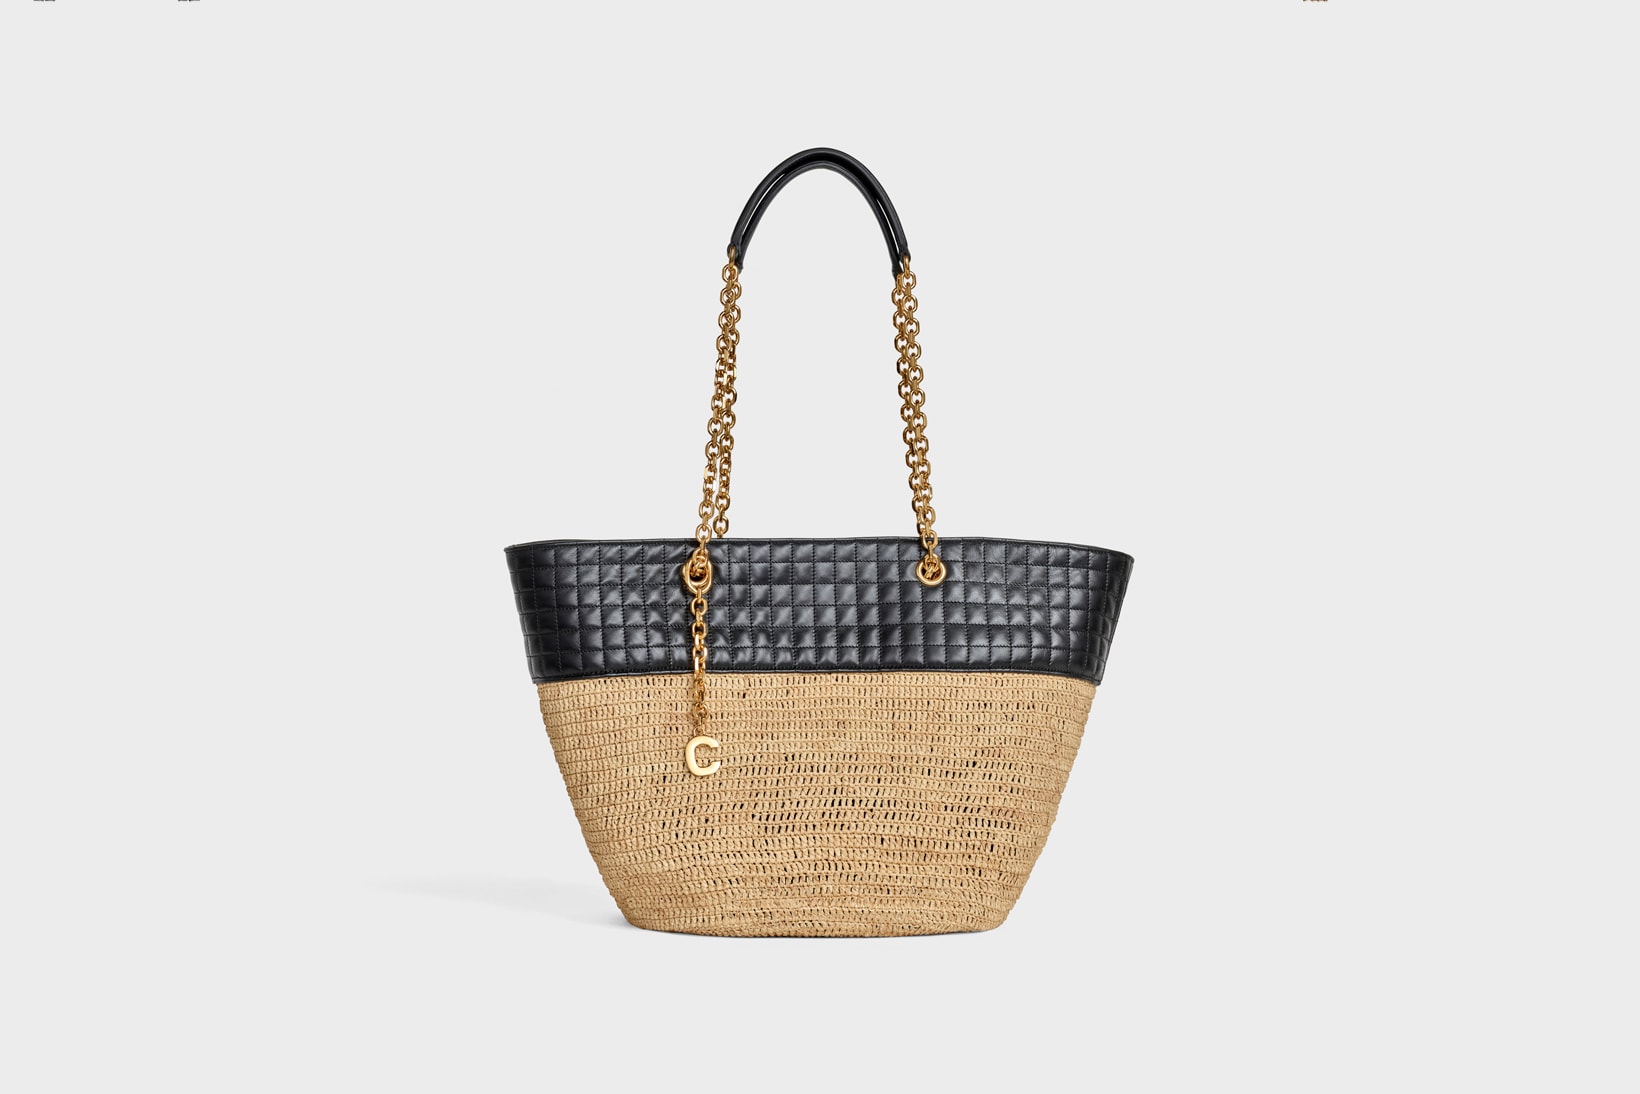 Celine Hedi Slimane Summer 2019 Basket Collection Chain Bag Tan Black